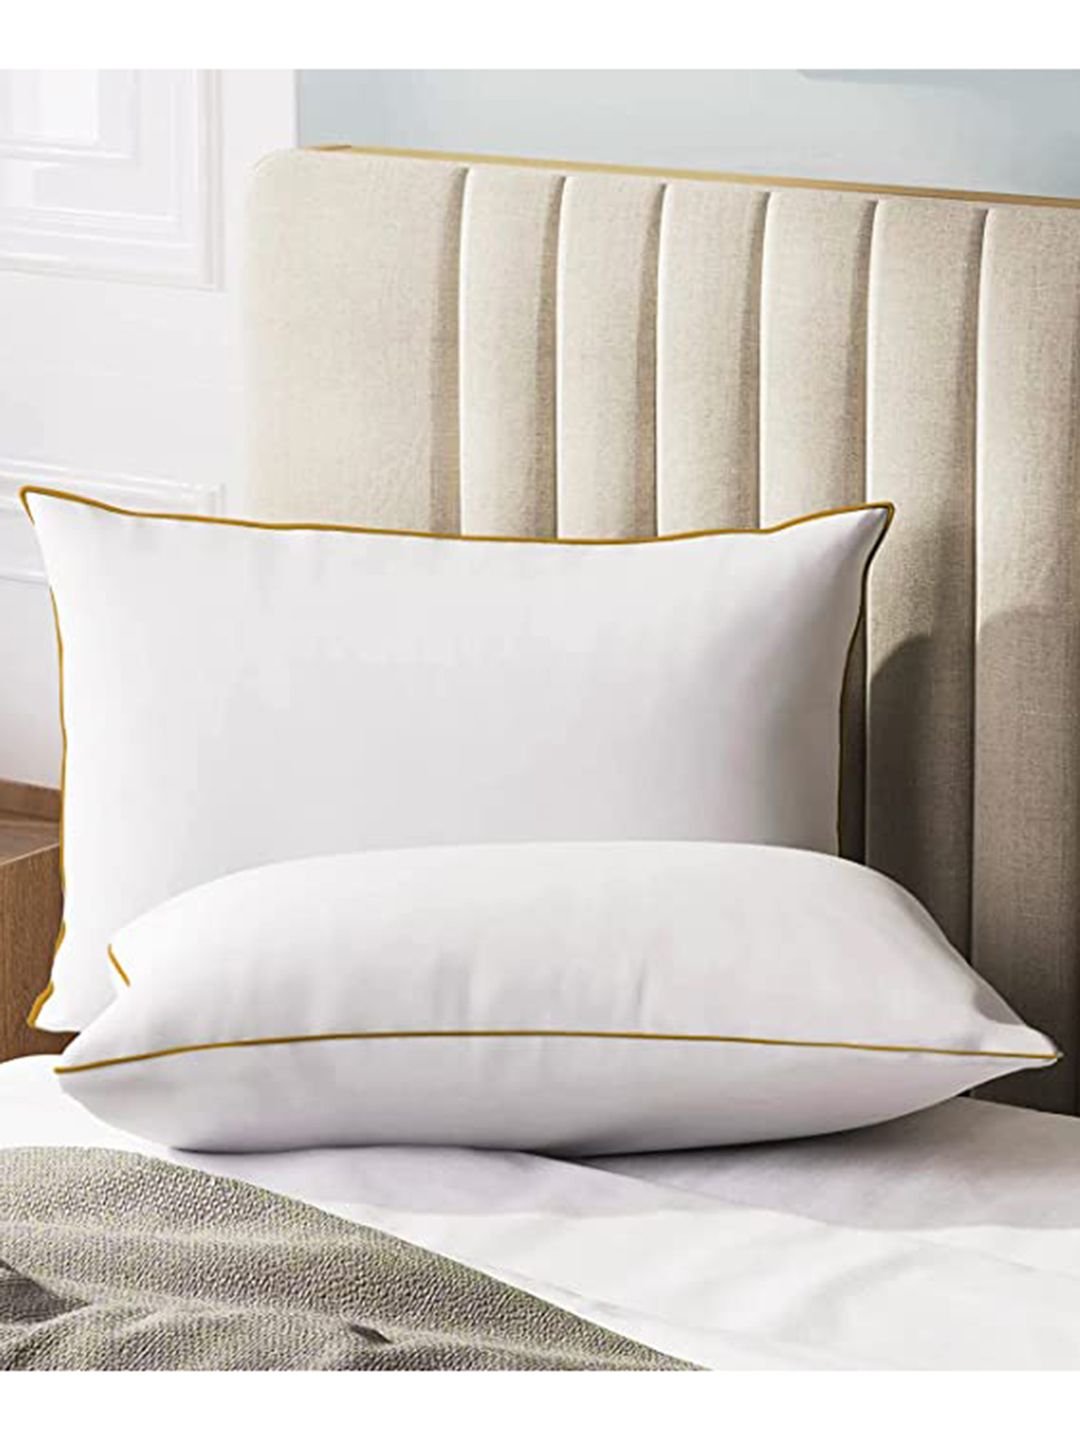 Sleepsia Set Of 2 White Solid Cotton Pillows Price in India